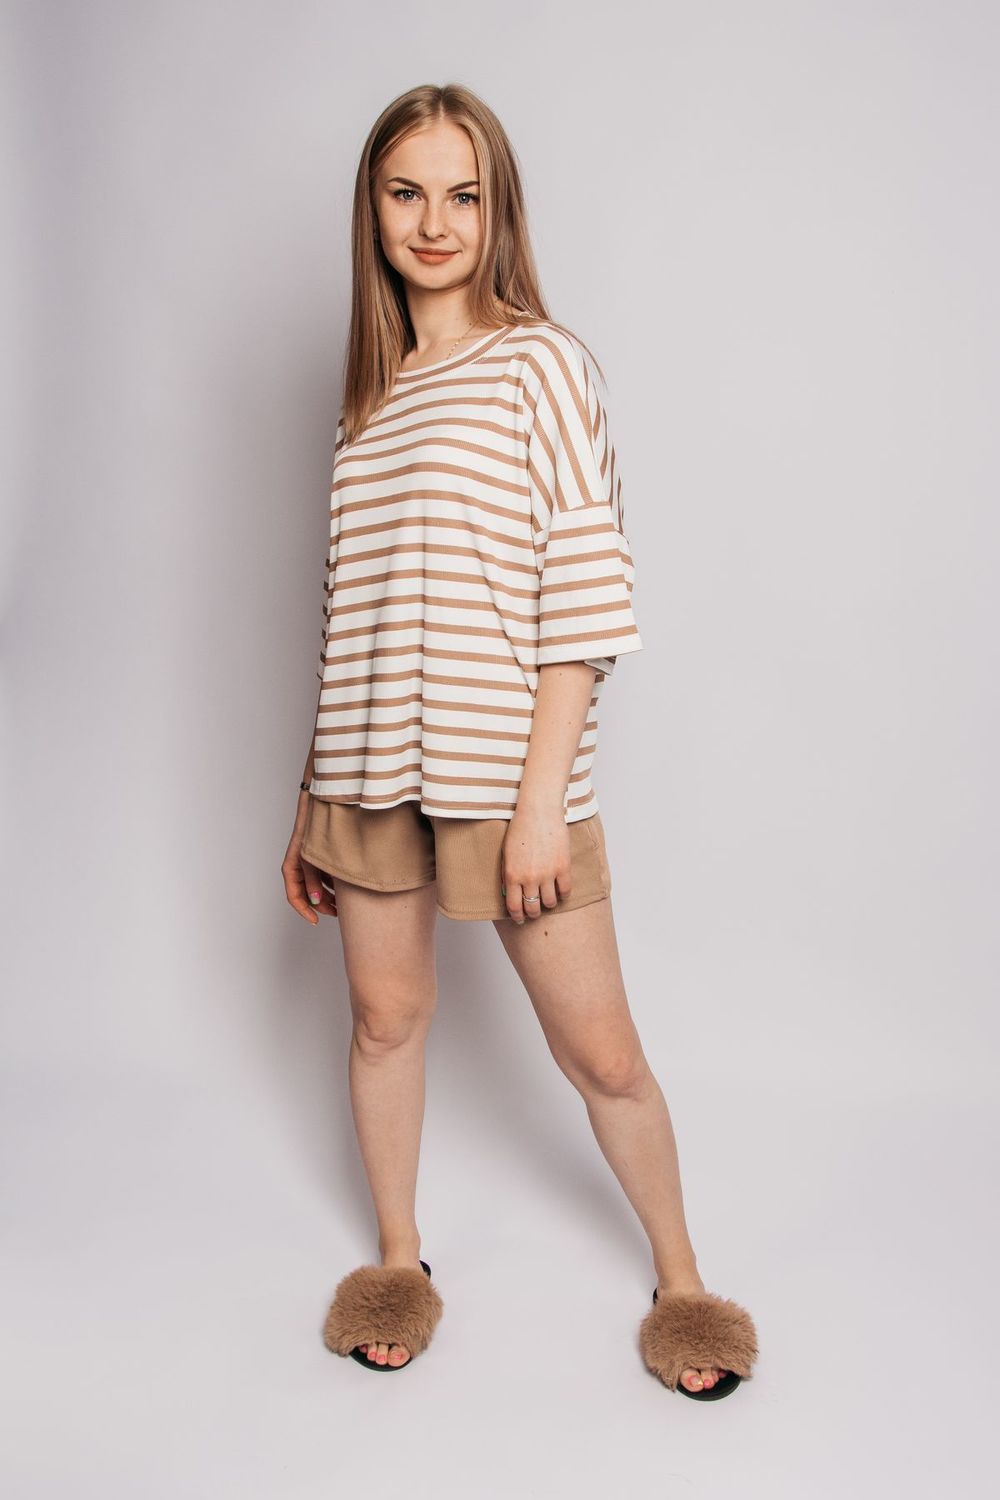 Комплект женский (футболка+шорты) 4357 - белый/коричневая полоска